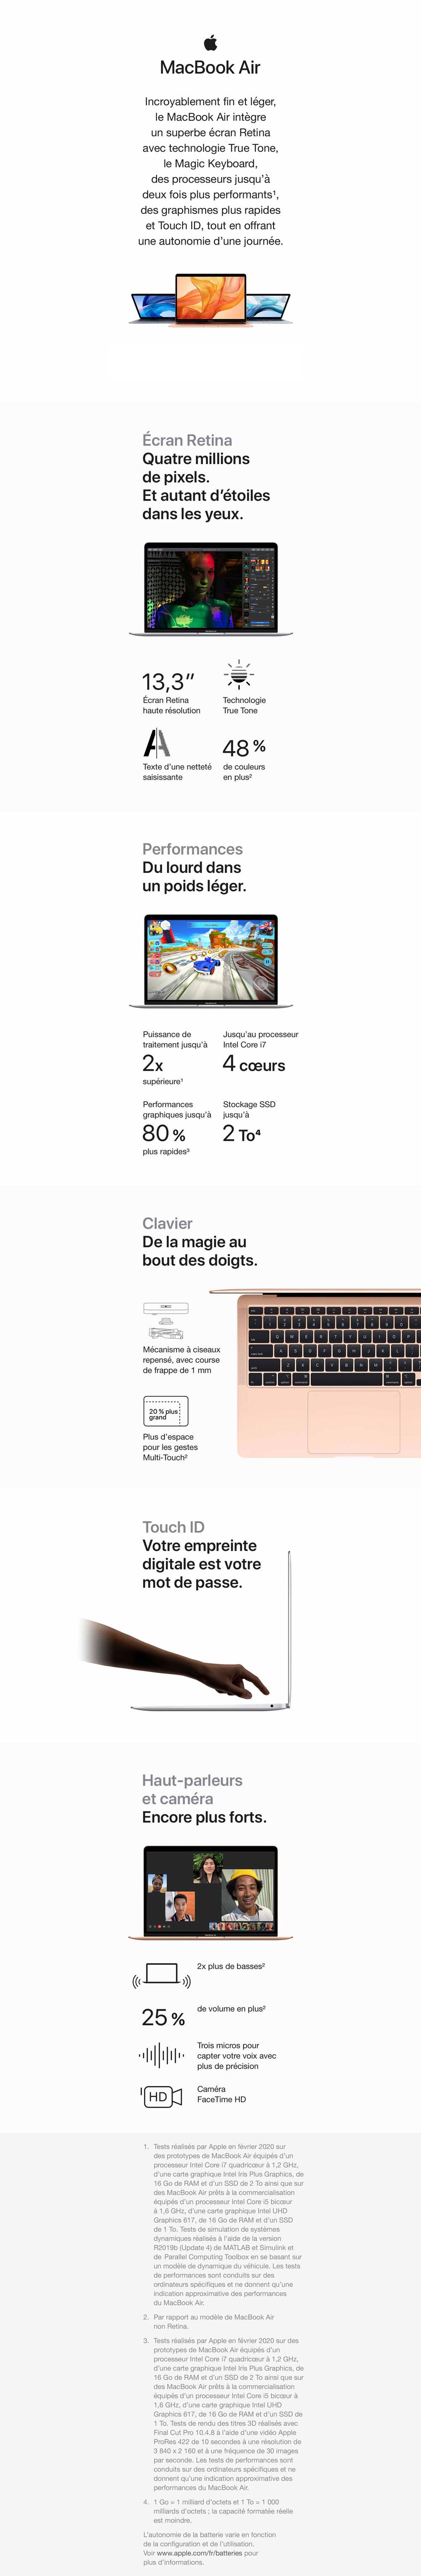 Apple - MacBook Air 